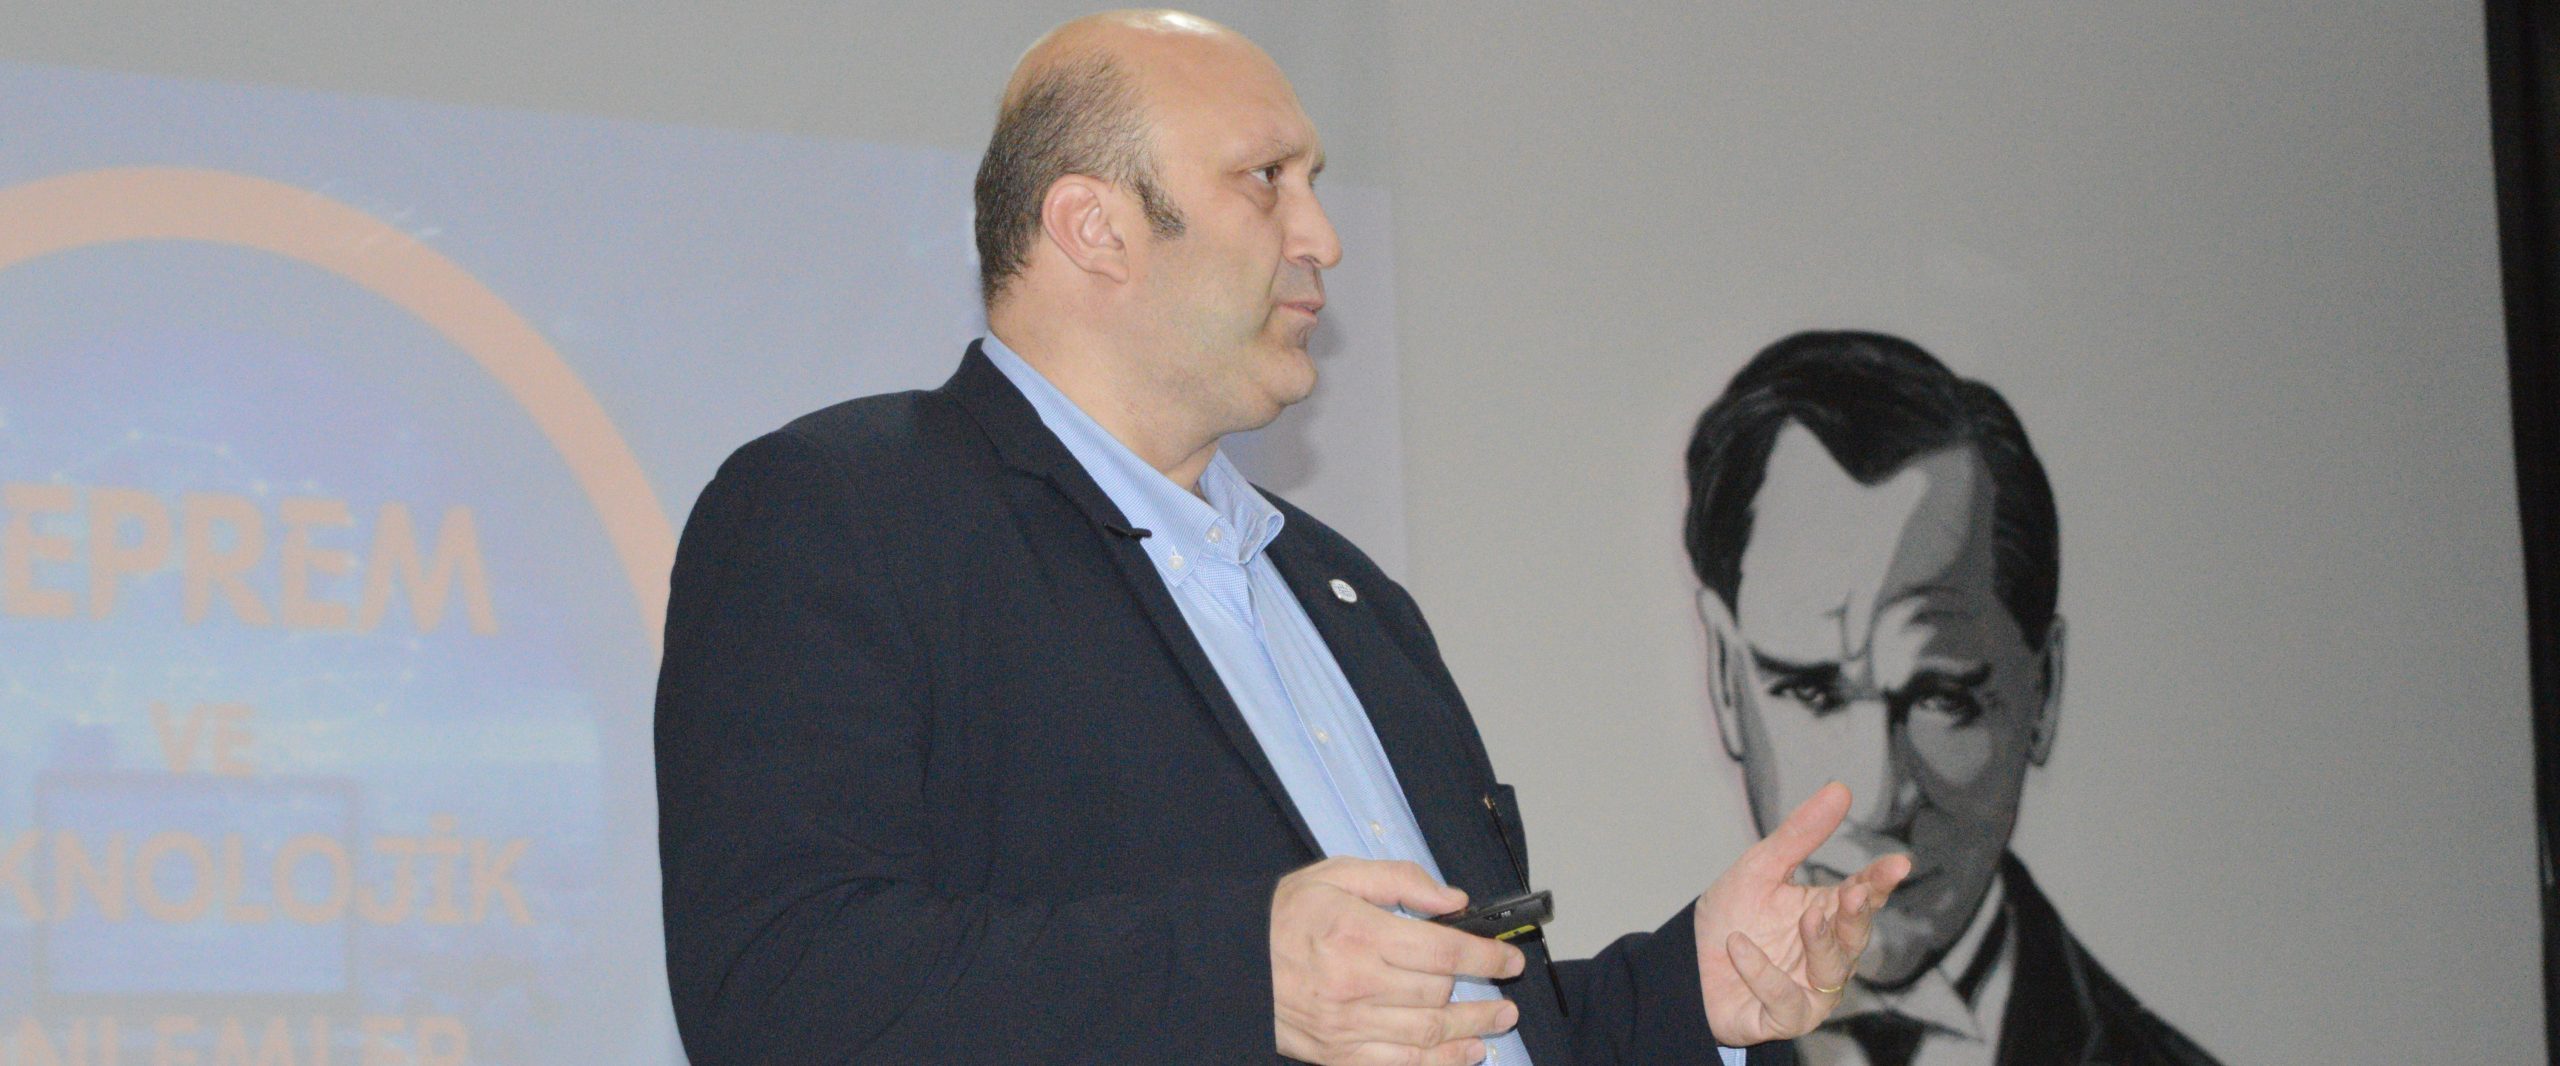 Mardin’de “Deprem ve Teknolojik Önlemler” konulu seminer verildi